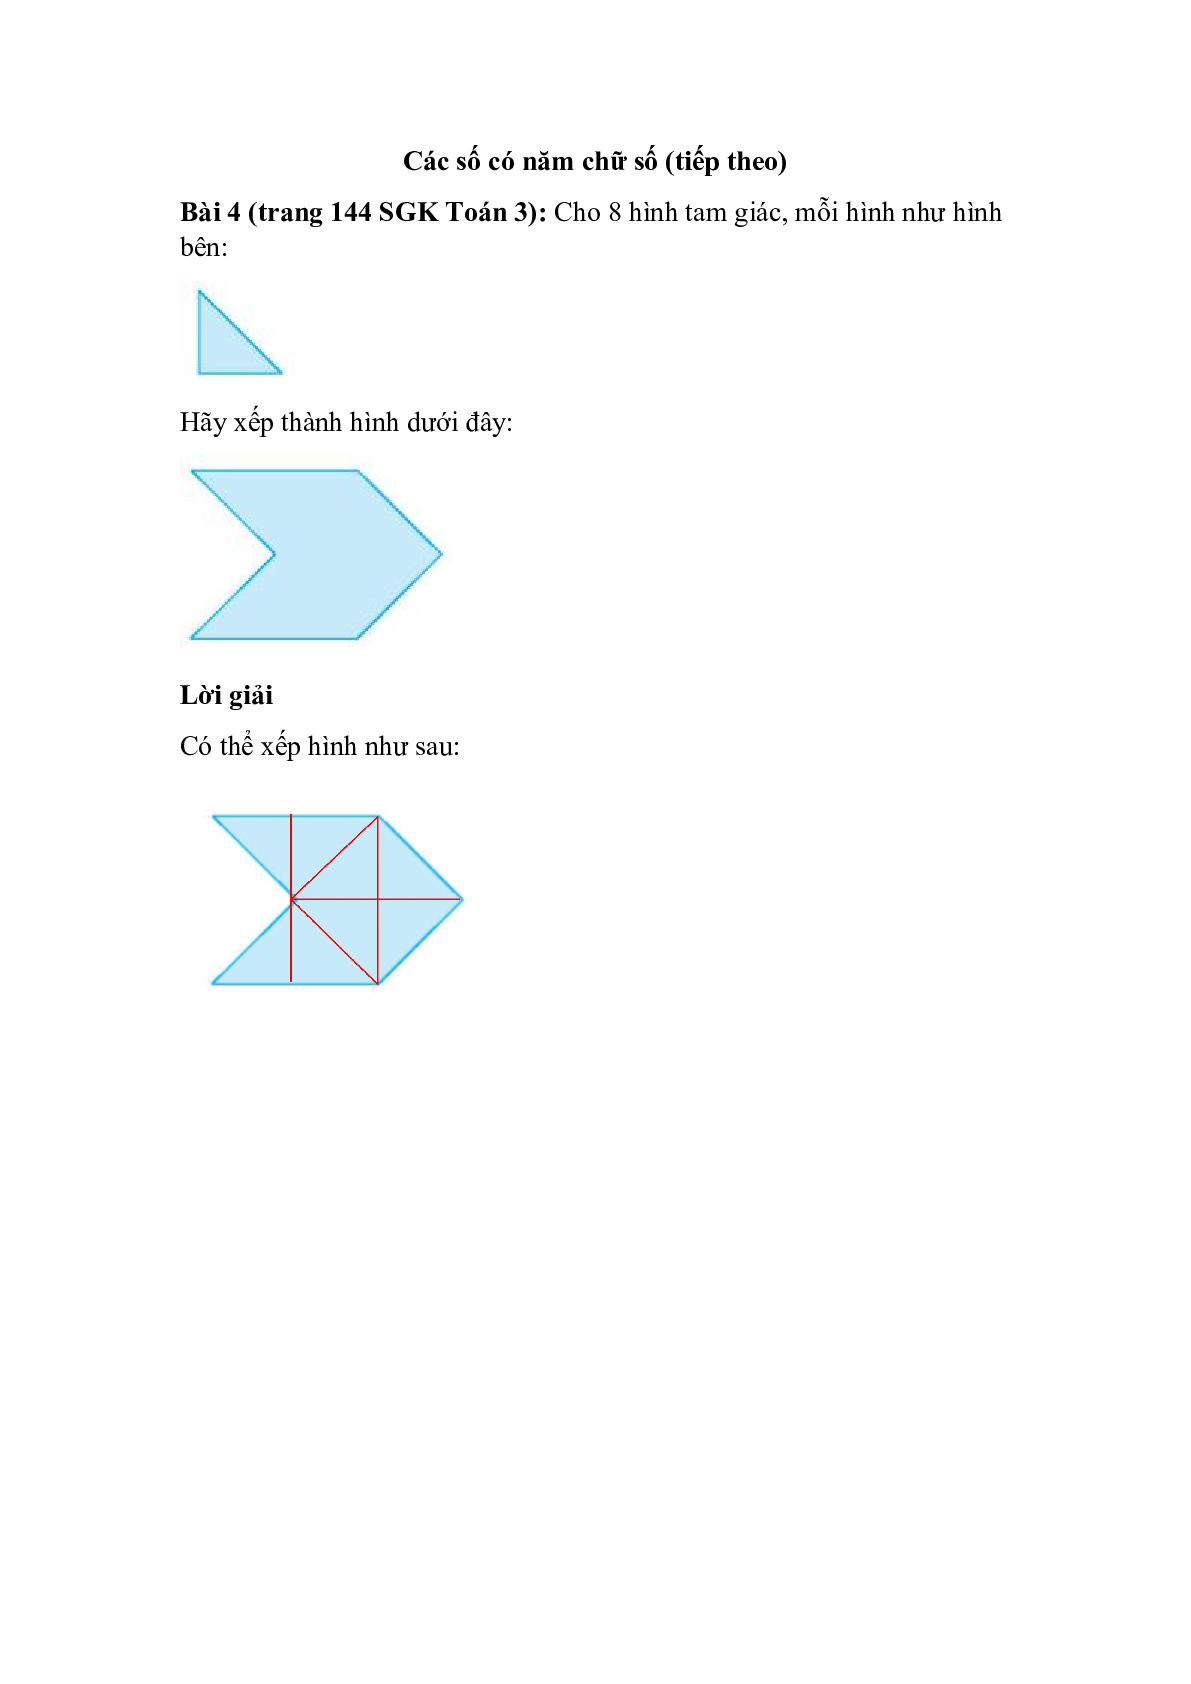 Cho 8 hình tam giác, mỗi hình như hình bên (trang 1)